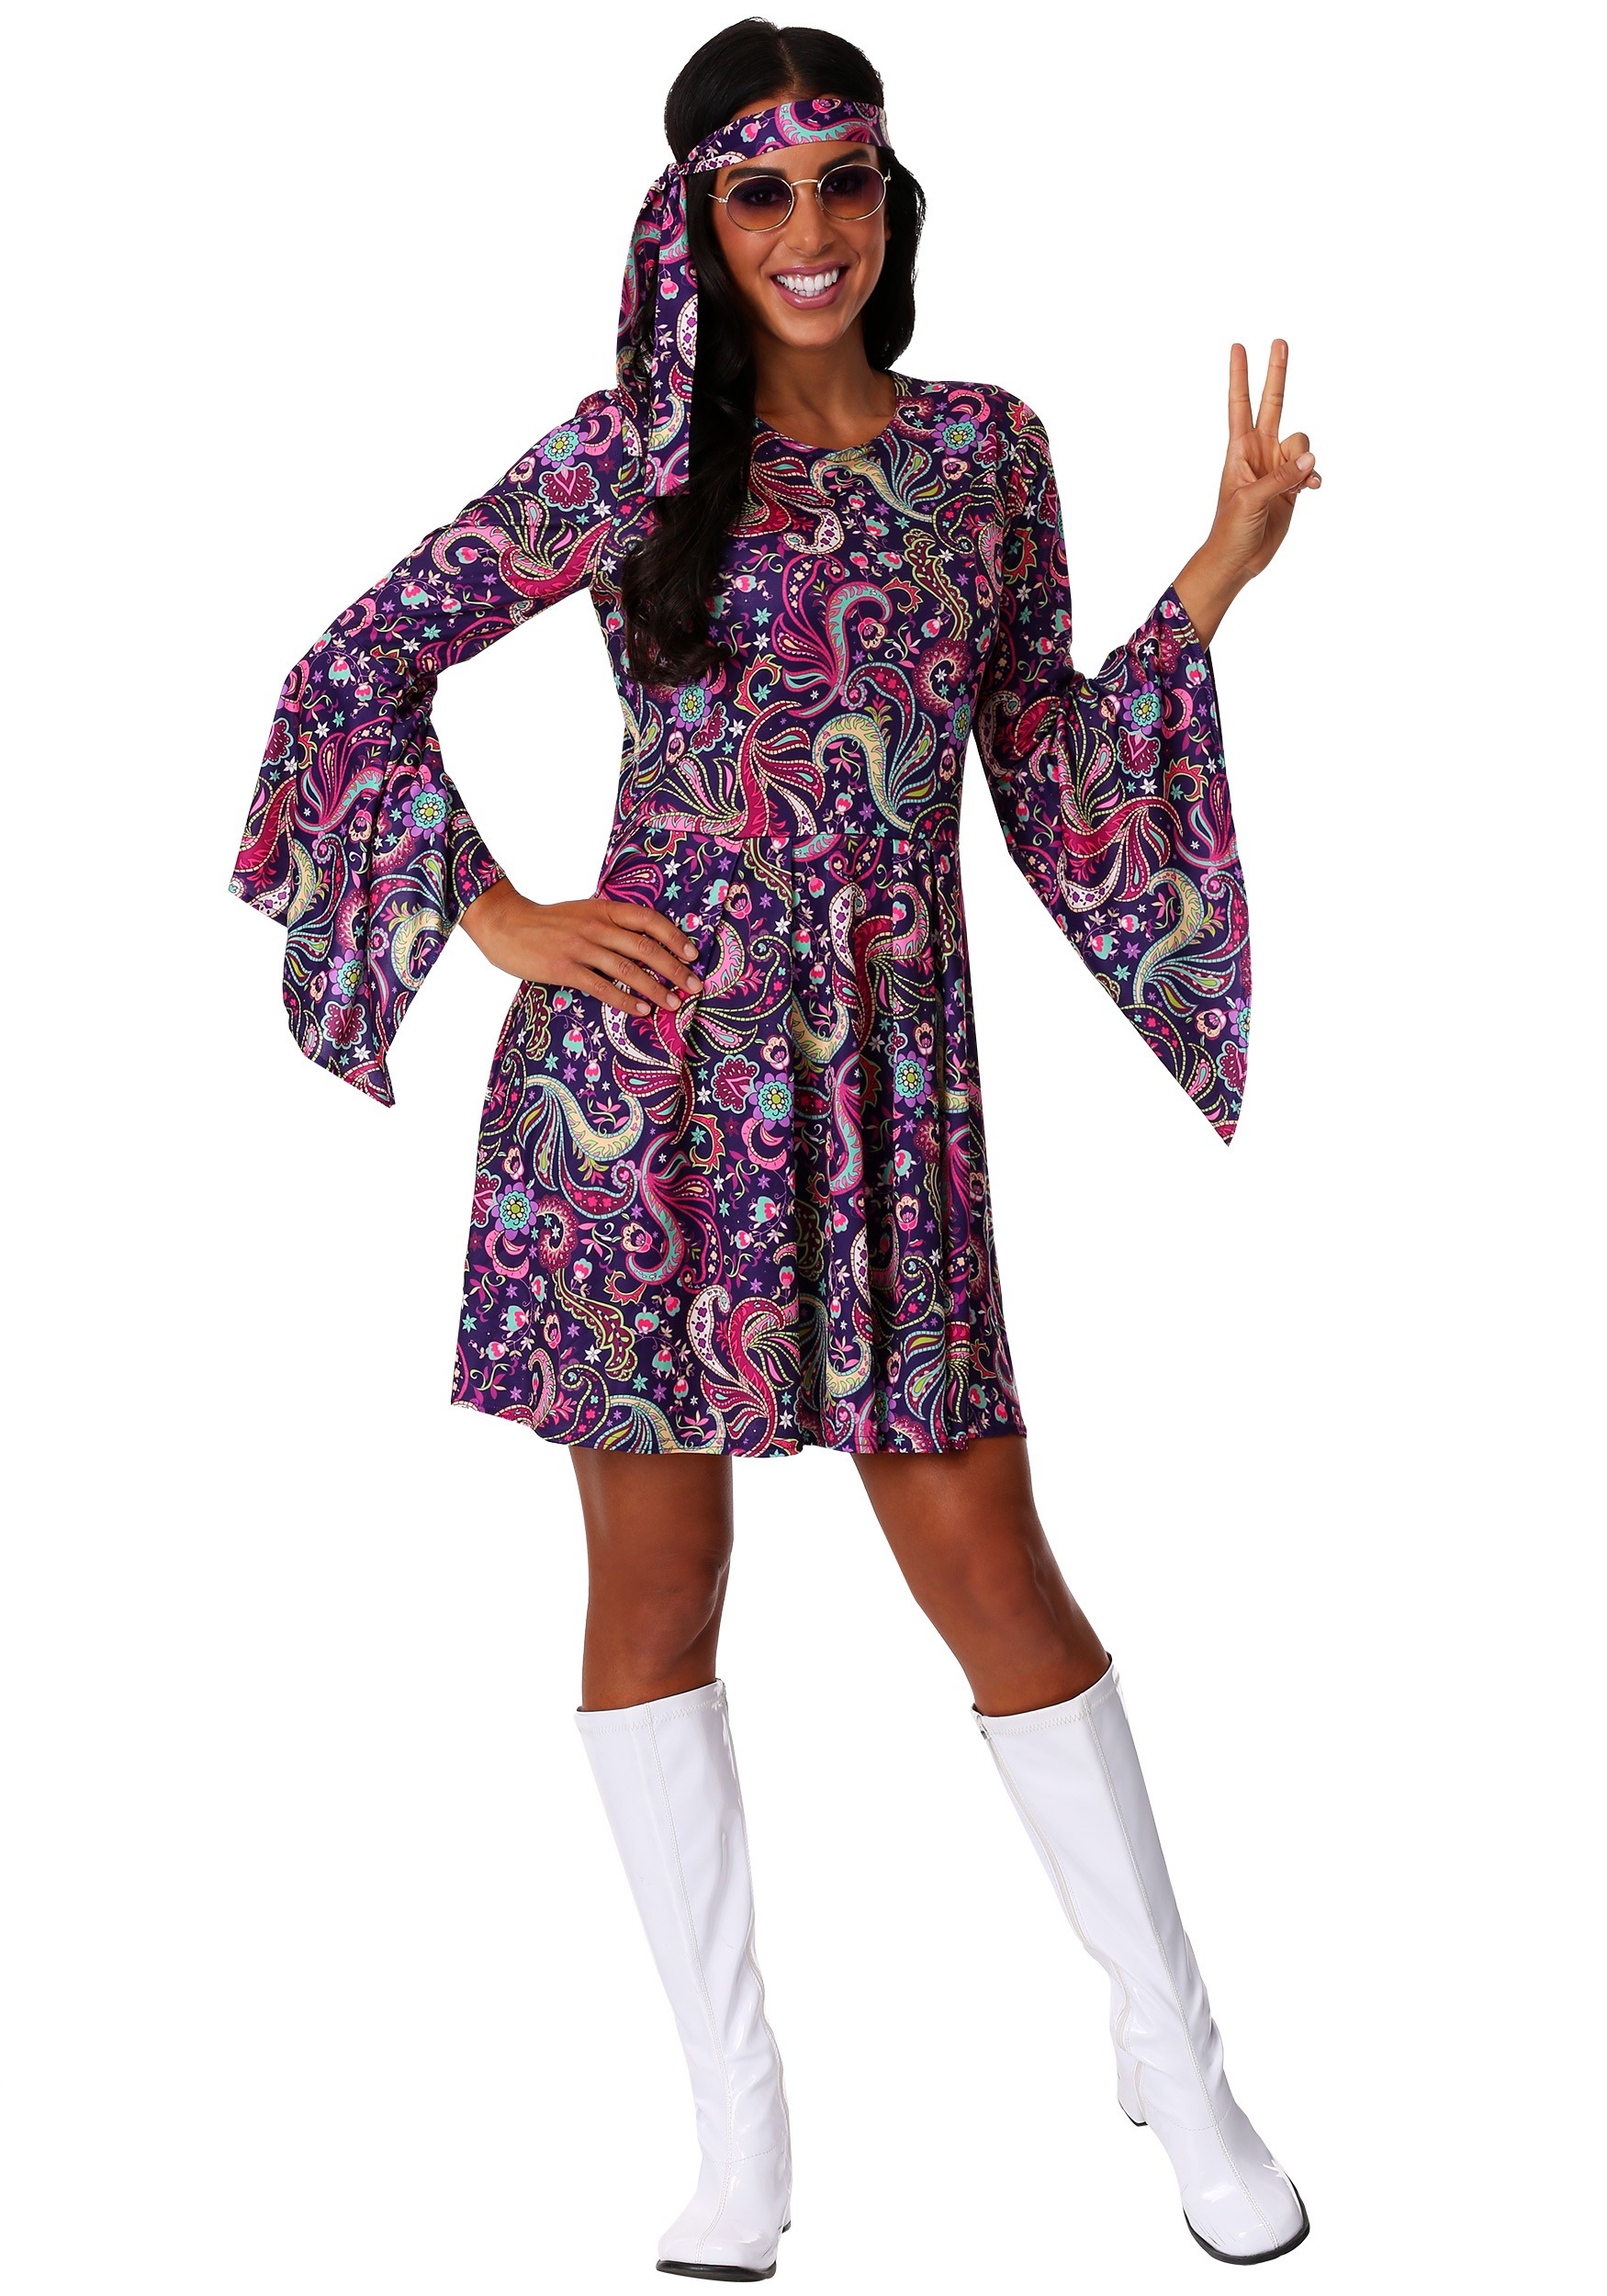 Woodstock Hippie Costume for Women